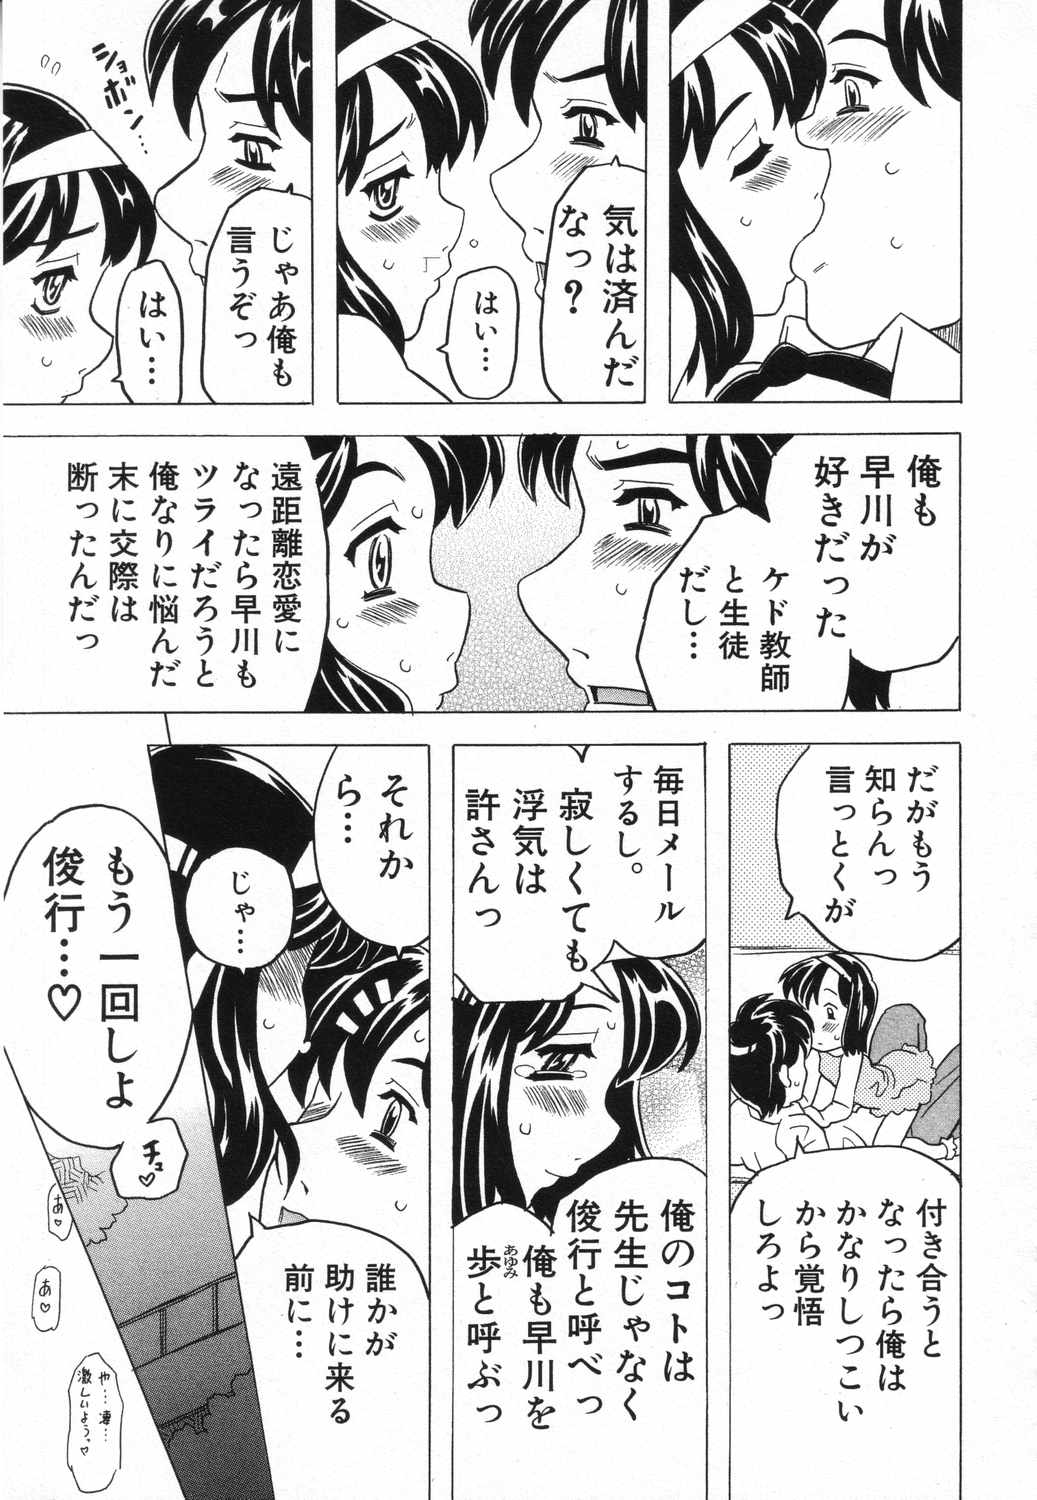 [Anthology] LOCO vol.5 Aki no Omorashi Musume Tokushuu page 22 full